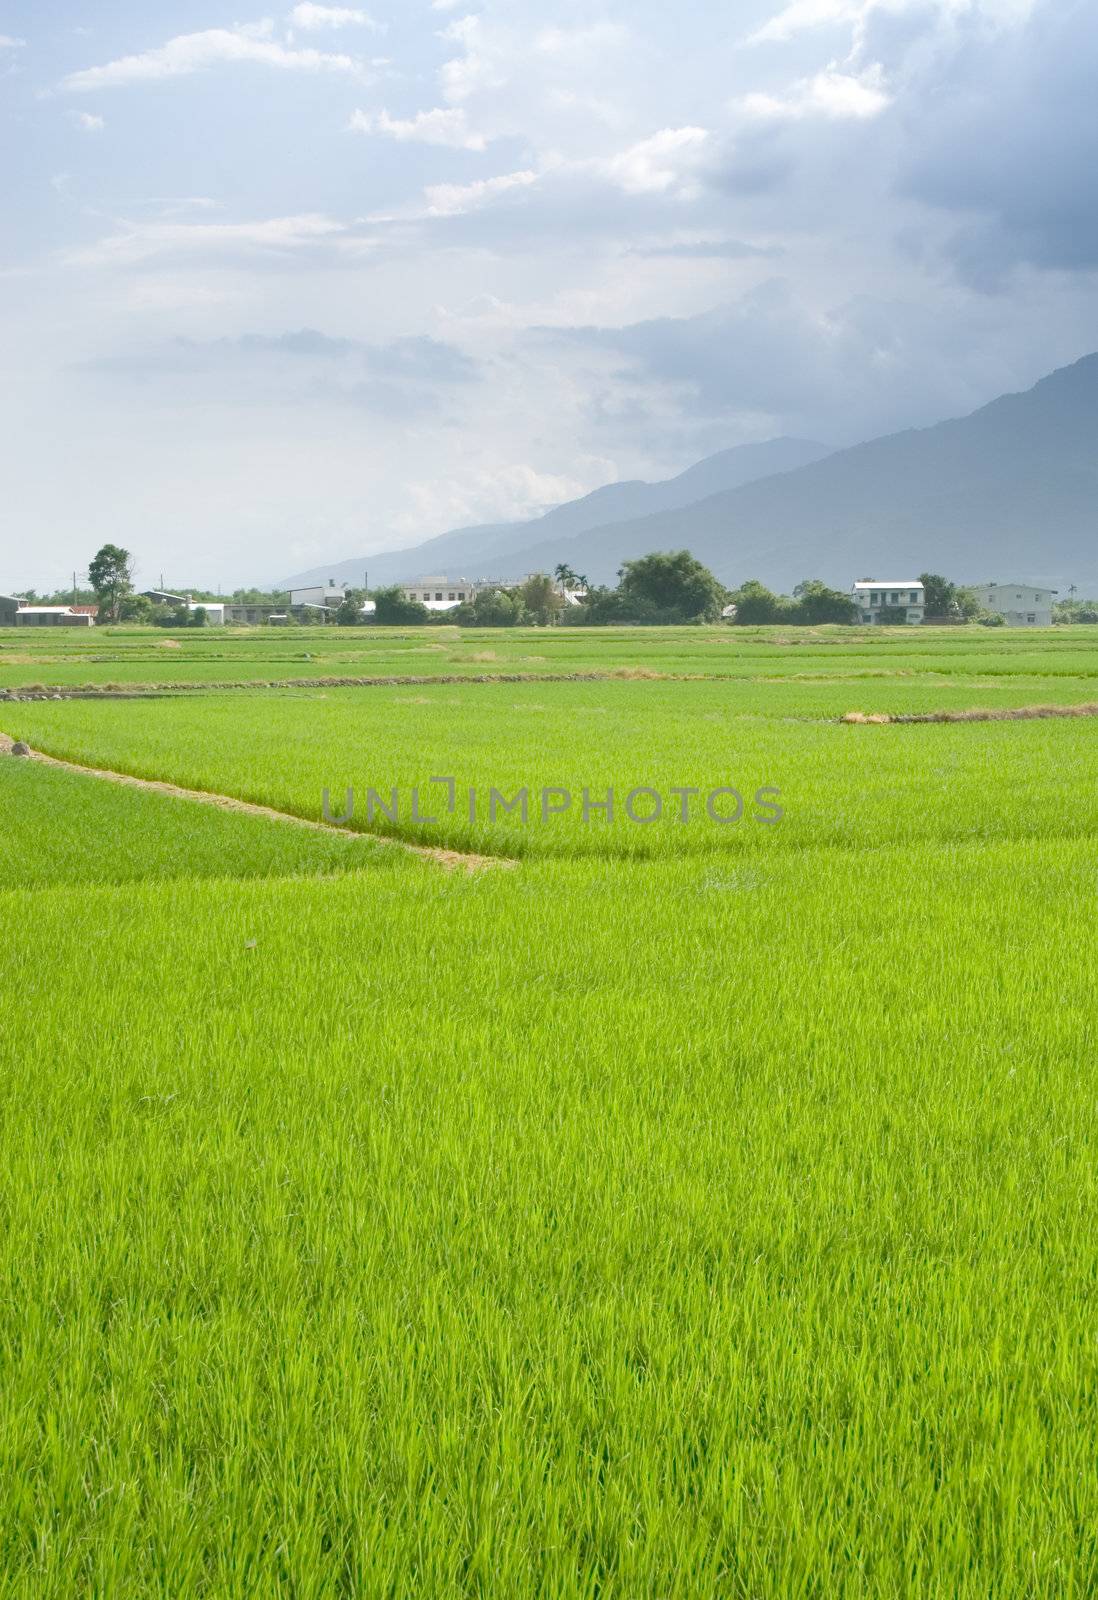 It is a landscape of beautiful green terraced field.